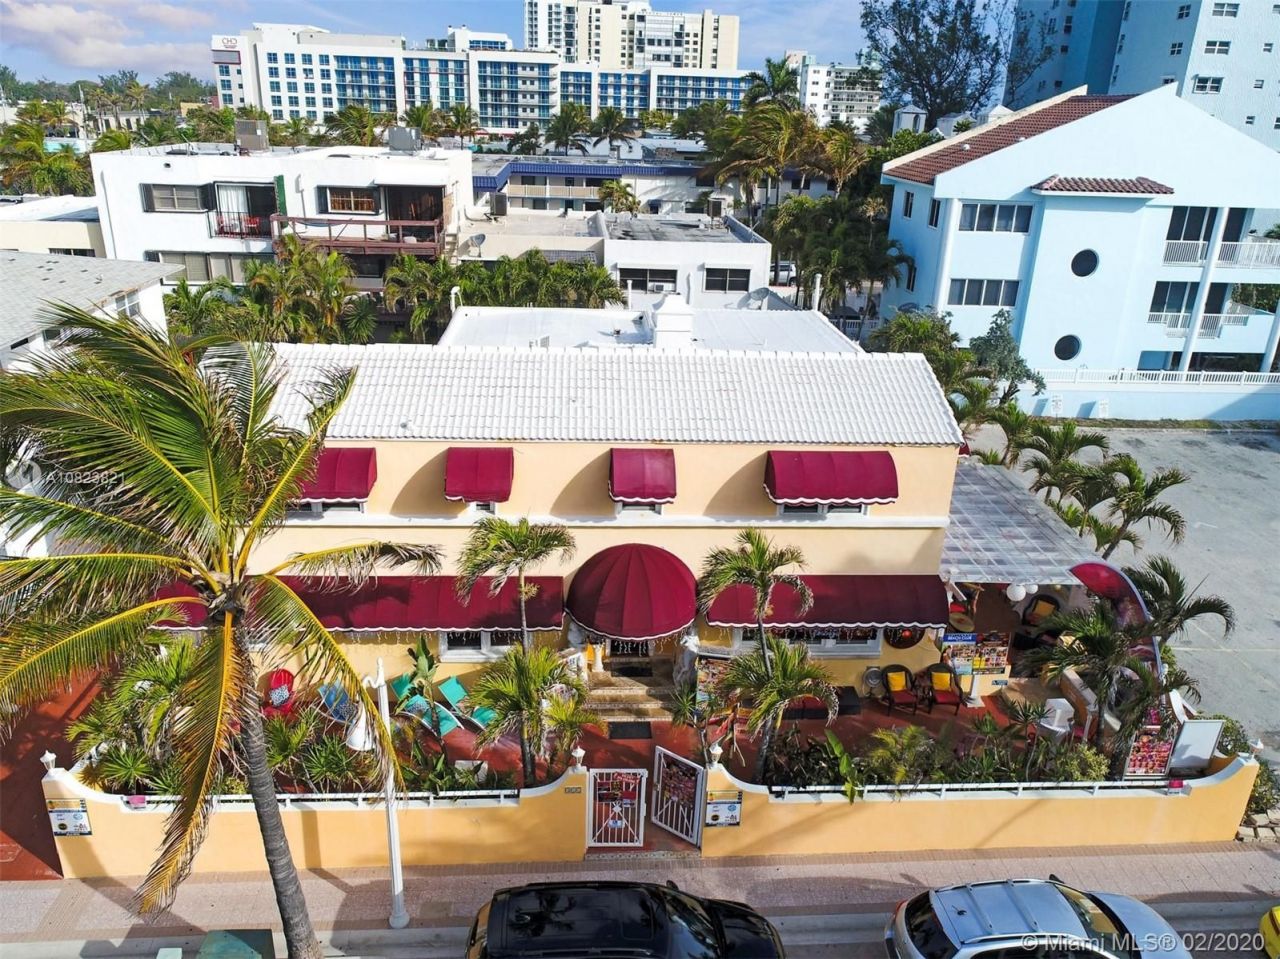 Hotel in Miami, USA, 3 000 sq.m - picture 1